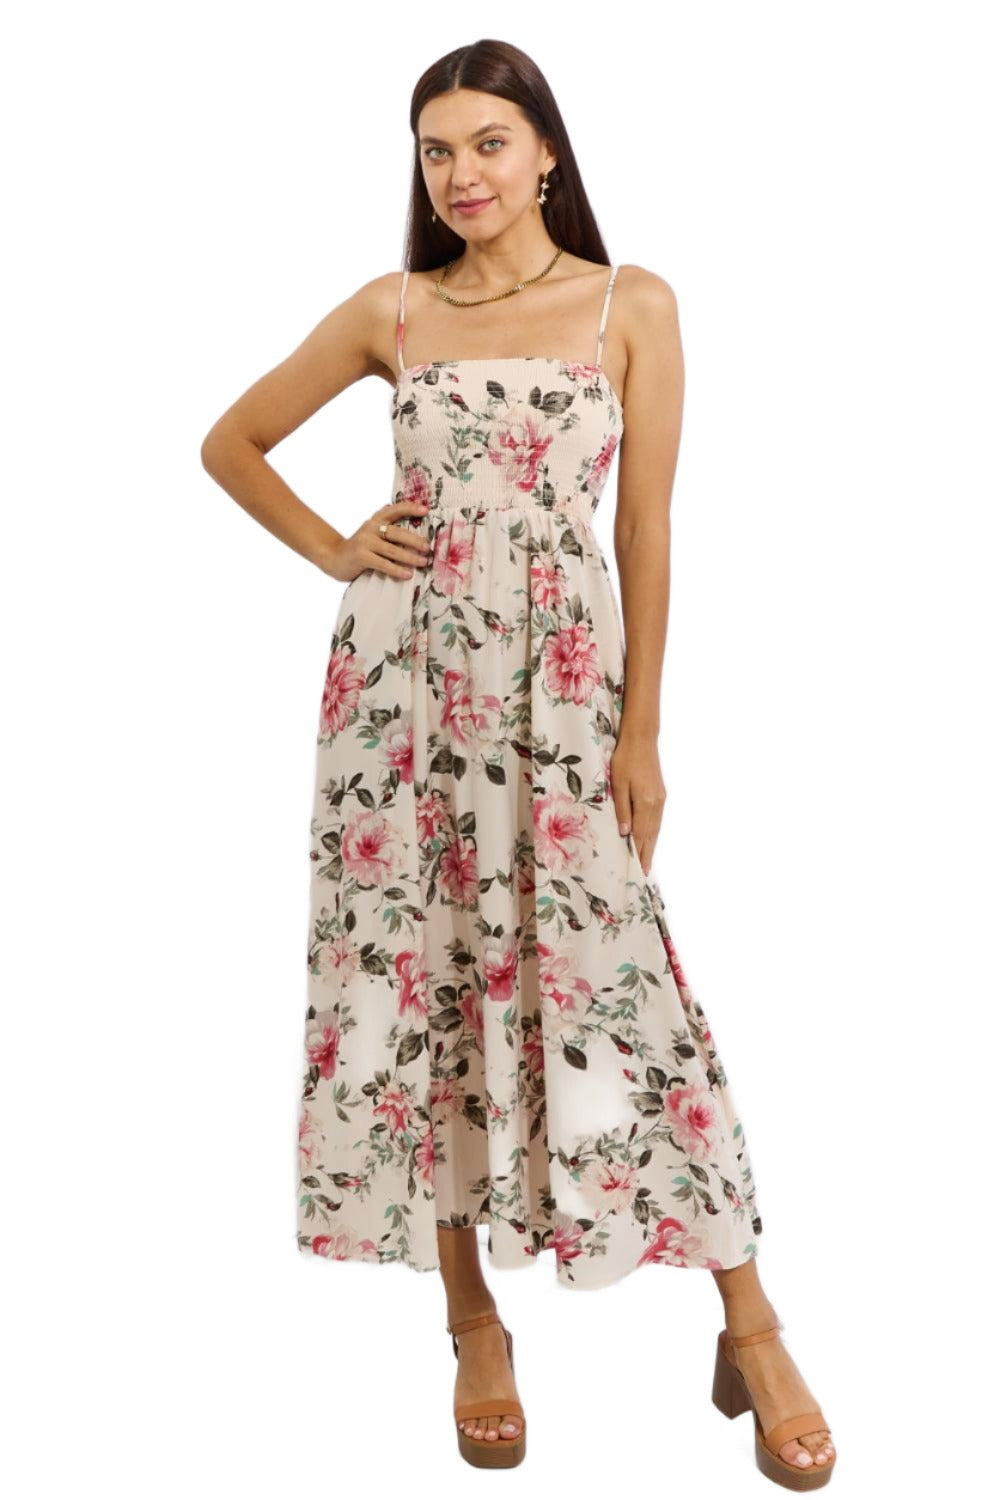 Women's Dresses Sleeveless Floral Maxi Dress Pink